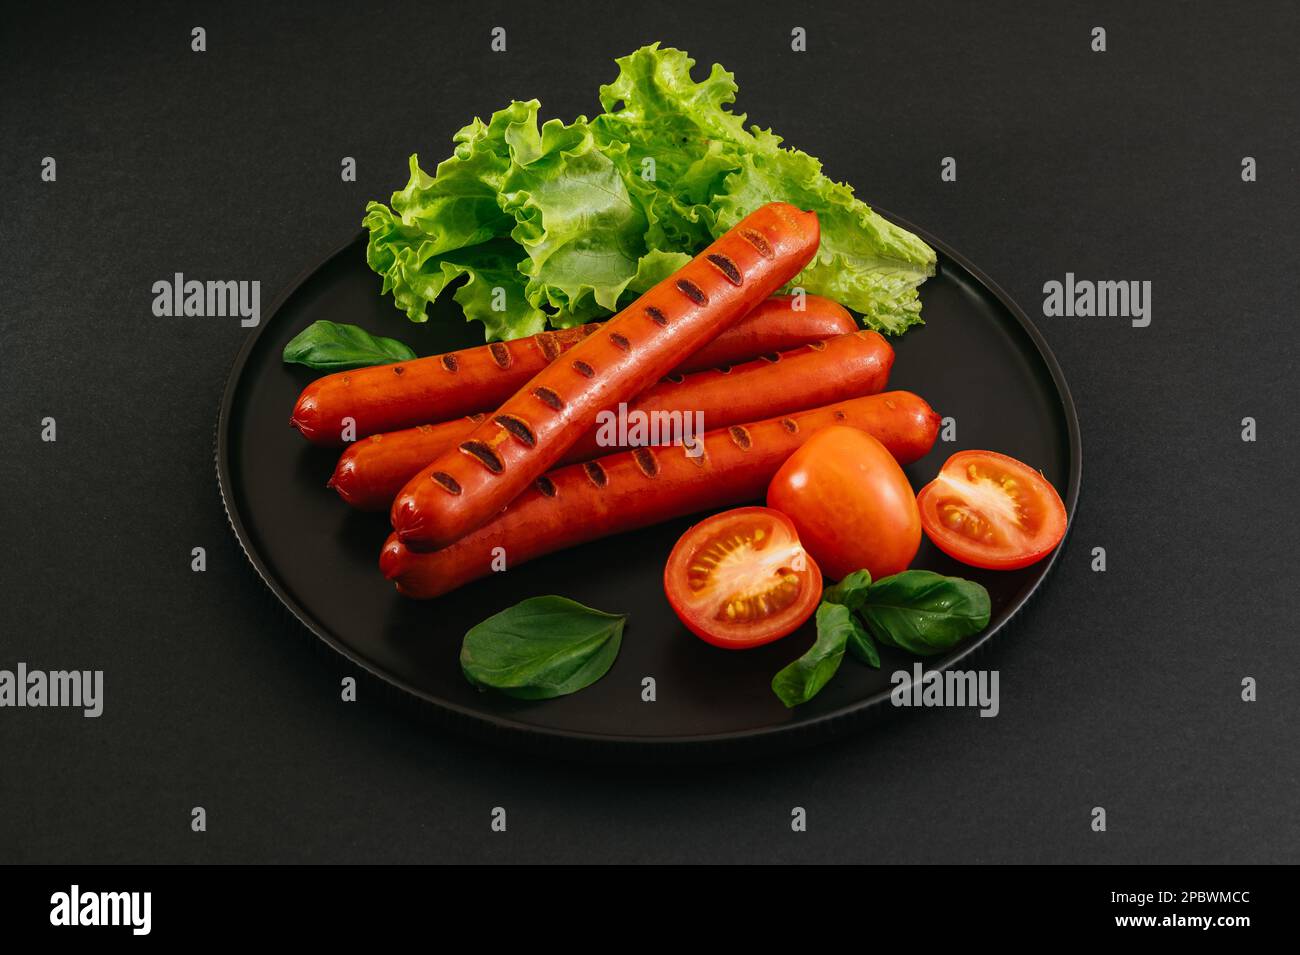 Saucisses grillées sur une assiette noire. Légumes et sauce. Banque D'Images